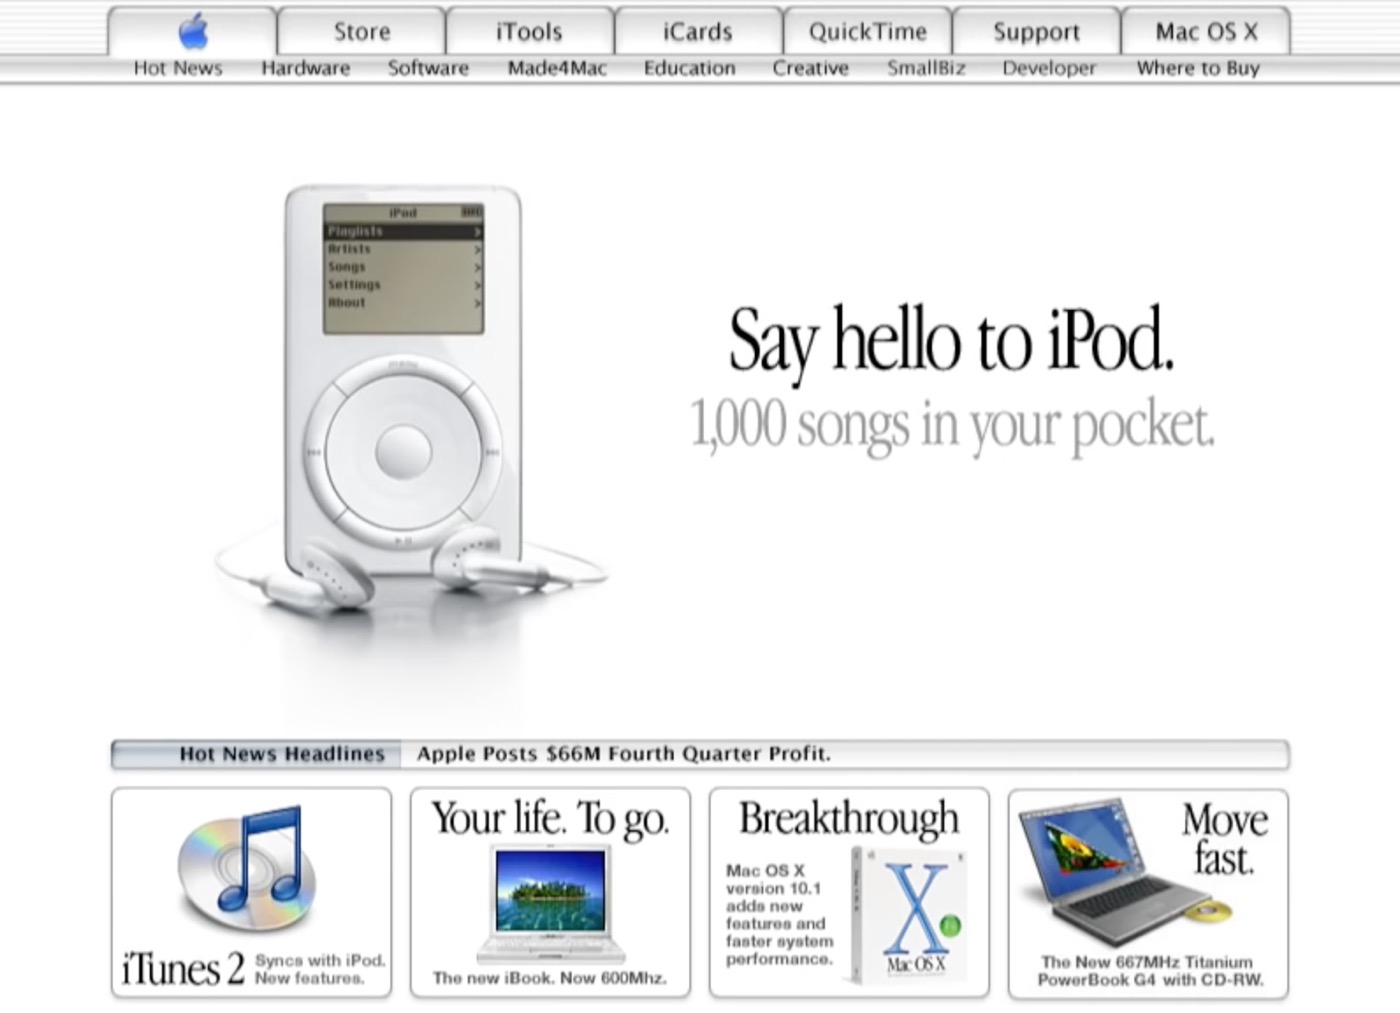 Appleの公式サイト｢Apple.com｣の20年の歴史を3分間にまとめた映像